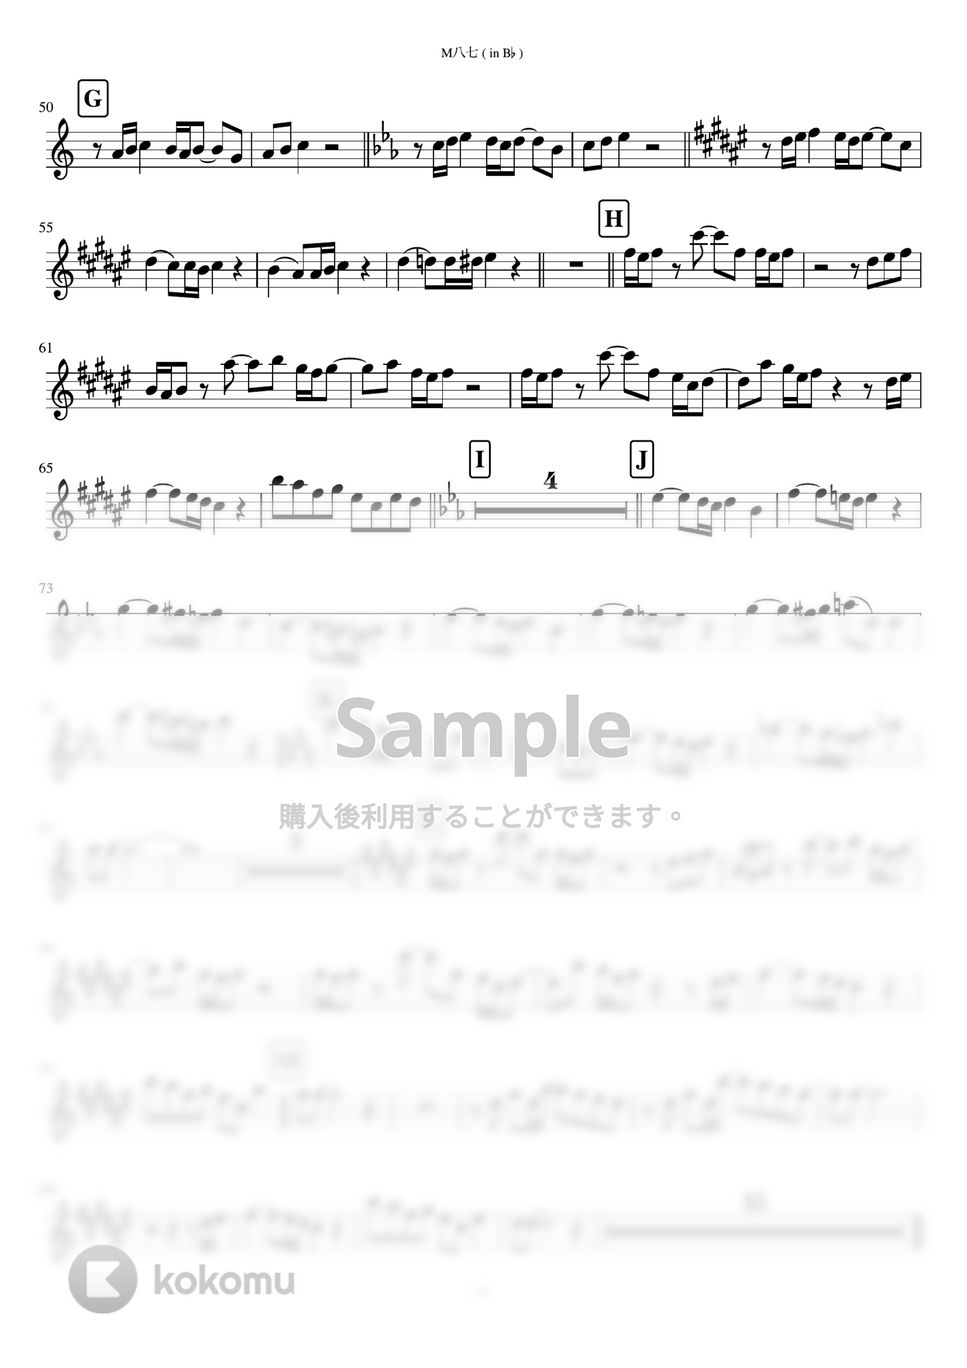 米津玄師 - M八七 (in B♭) by inojunCH